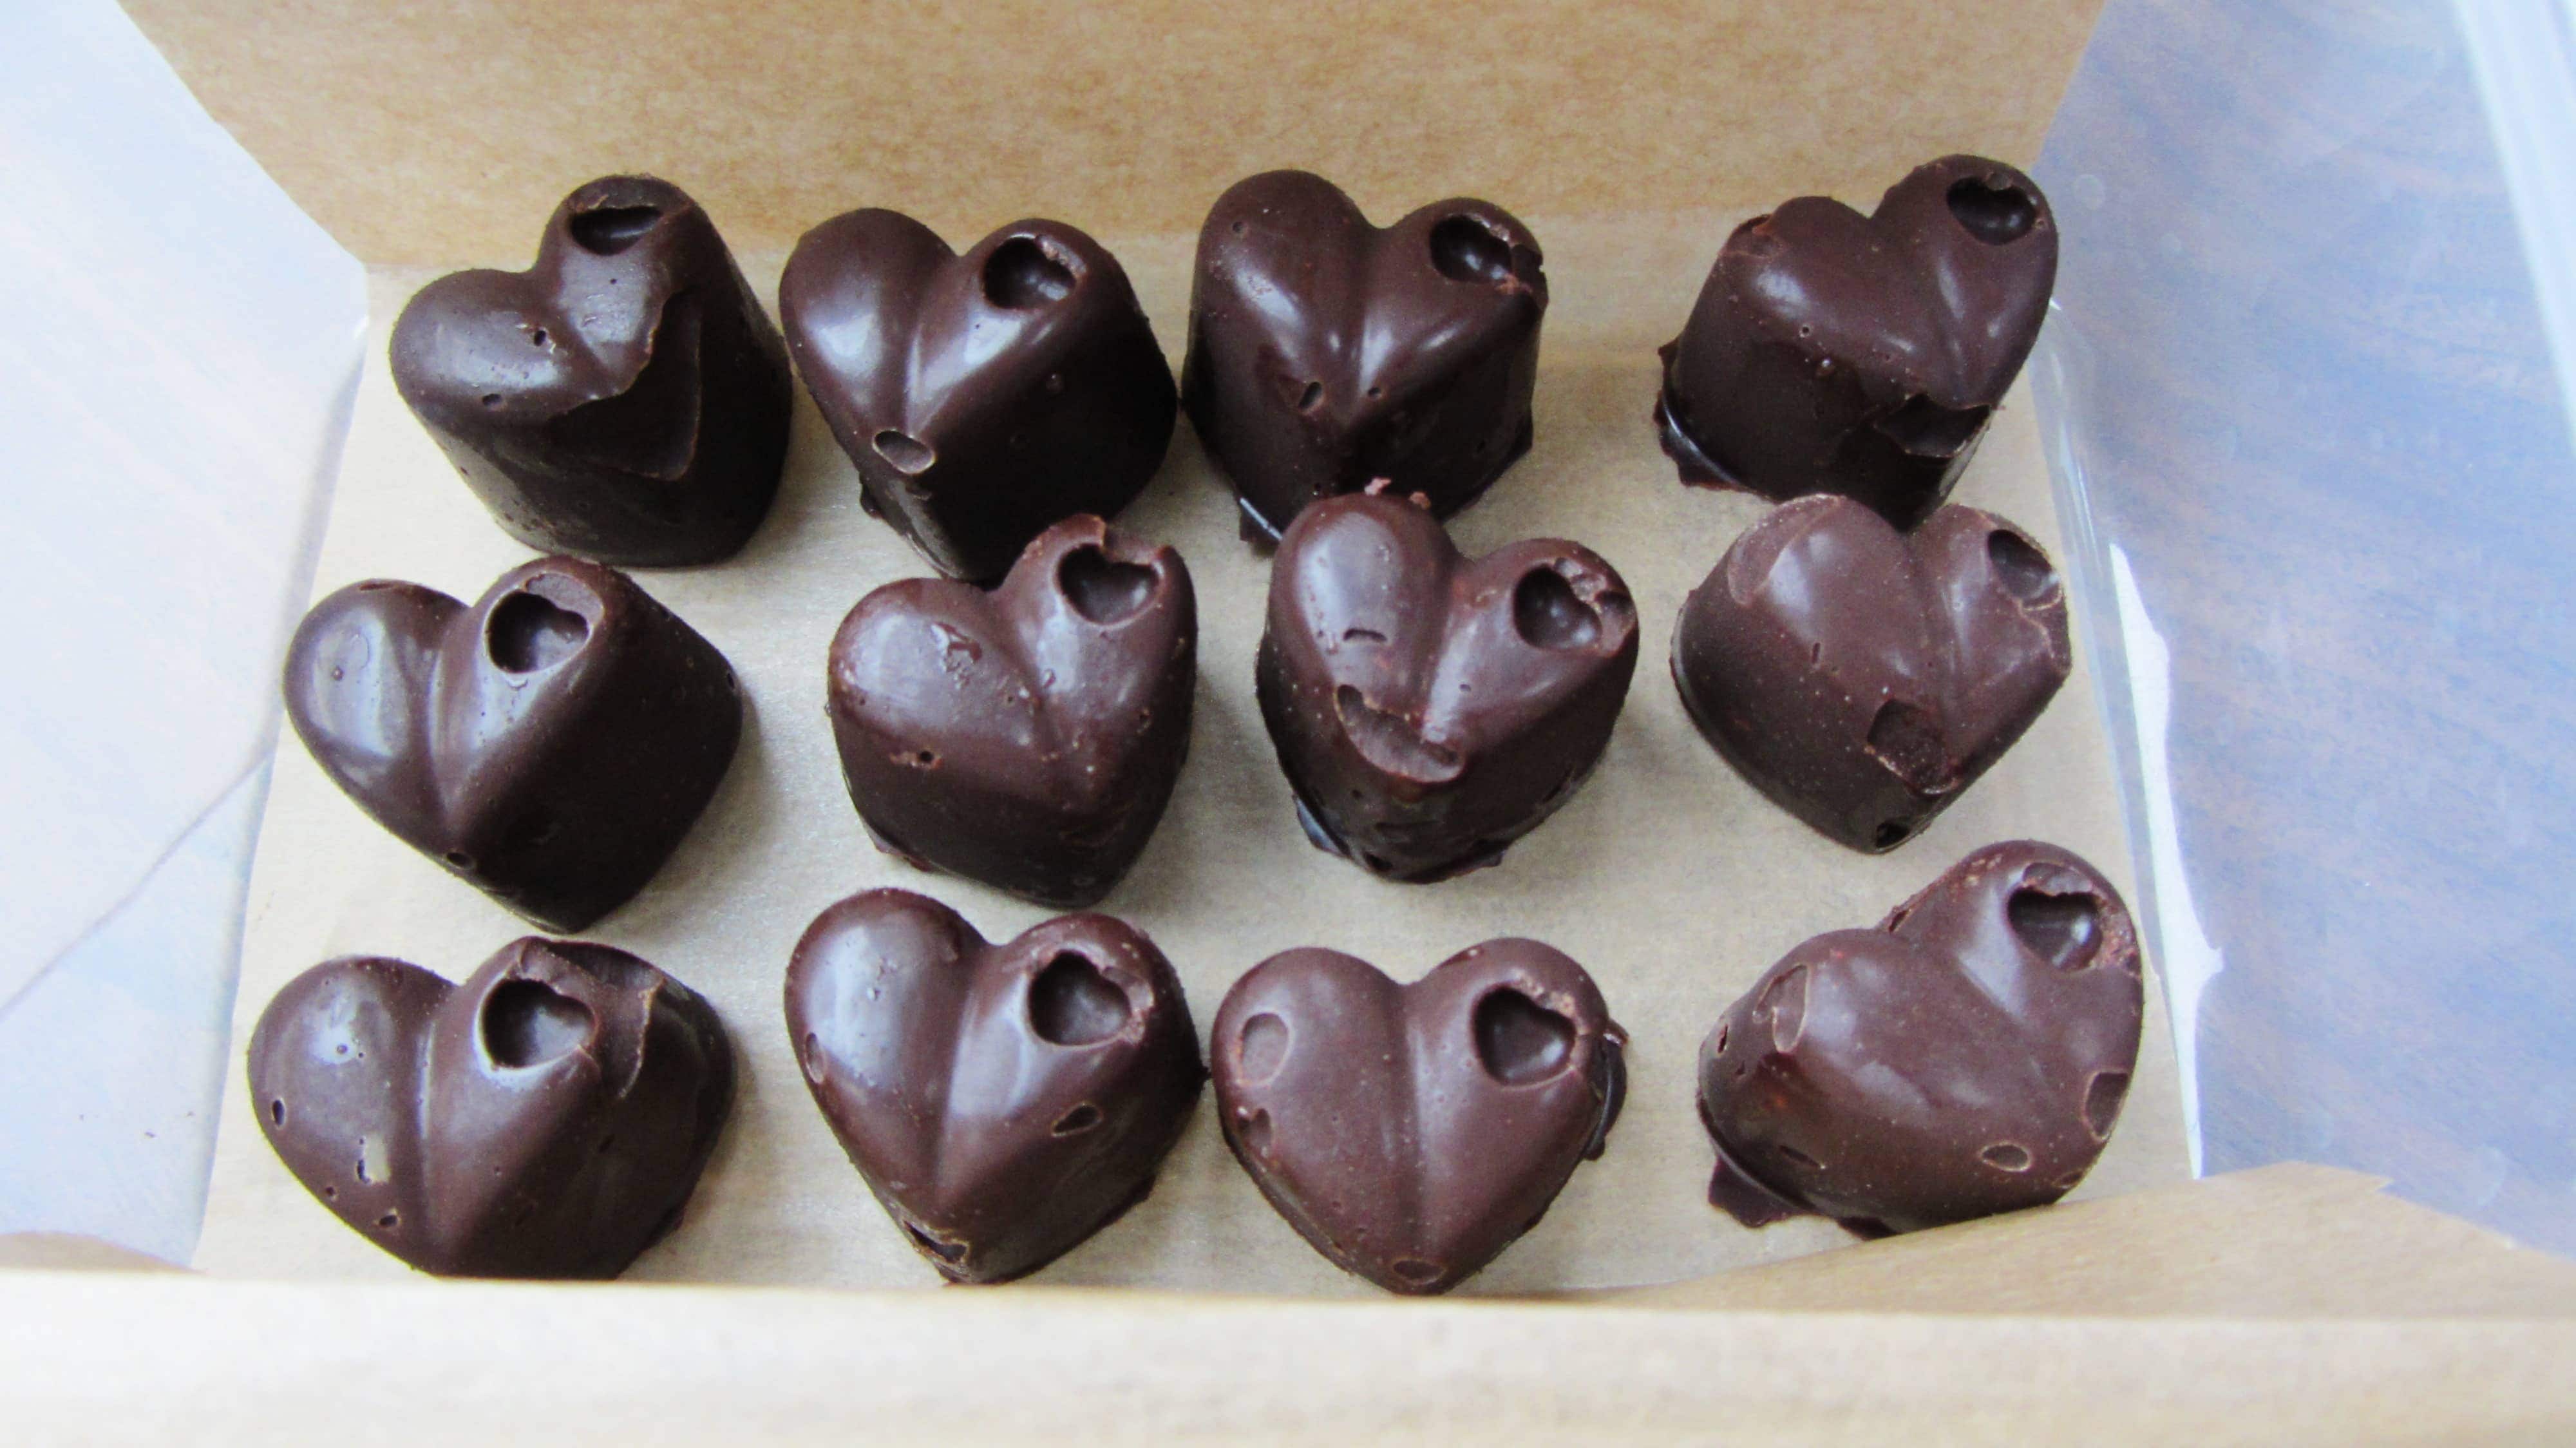 Homemade chocolates from Indigo Herbs raw chocolate making kit